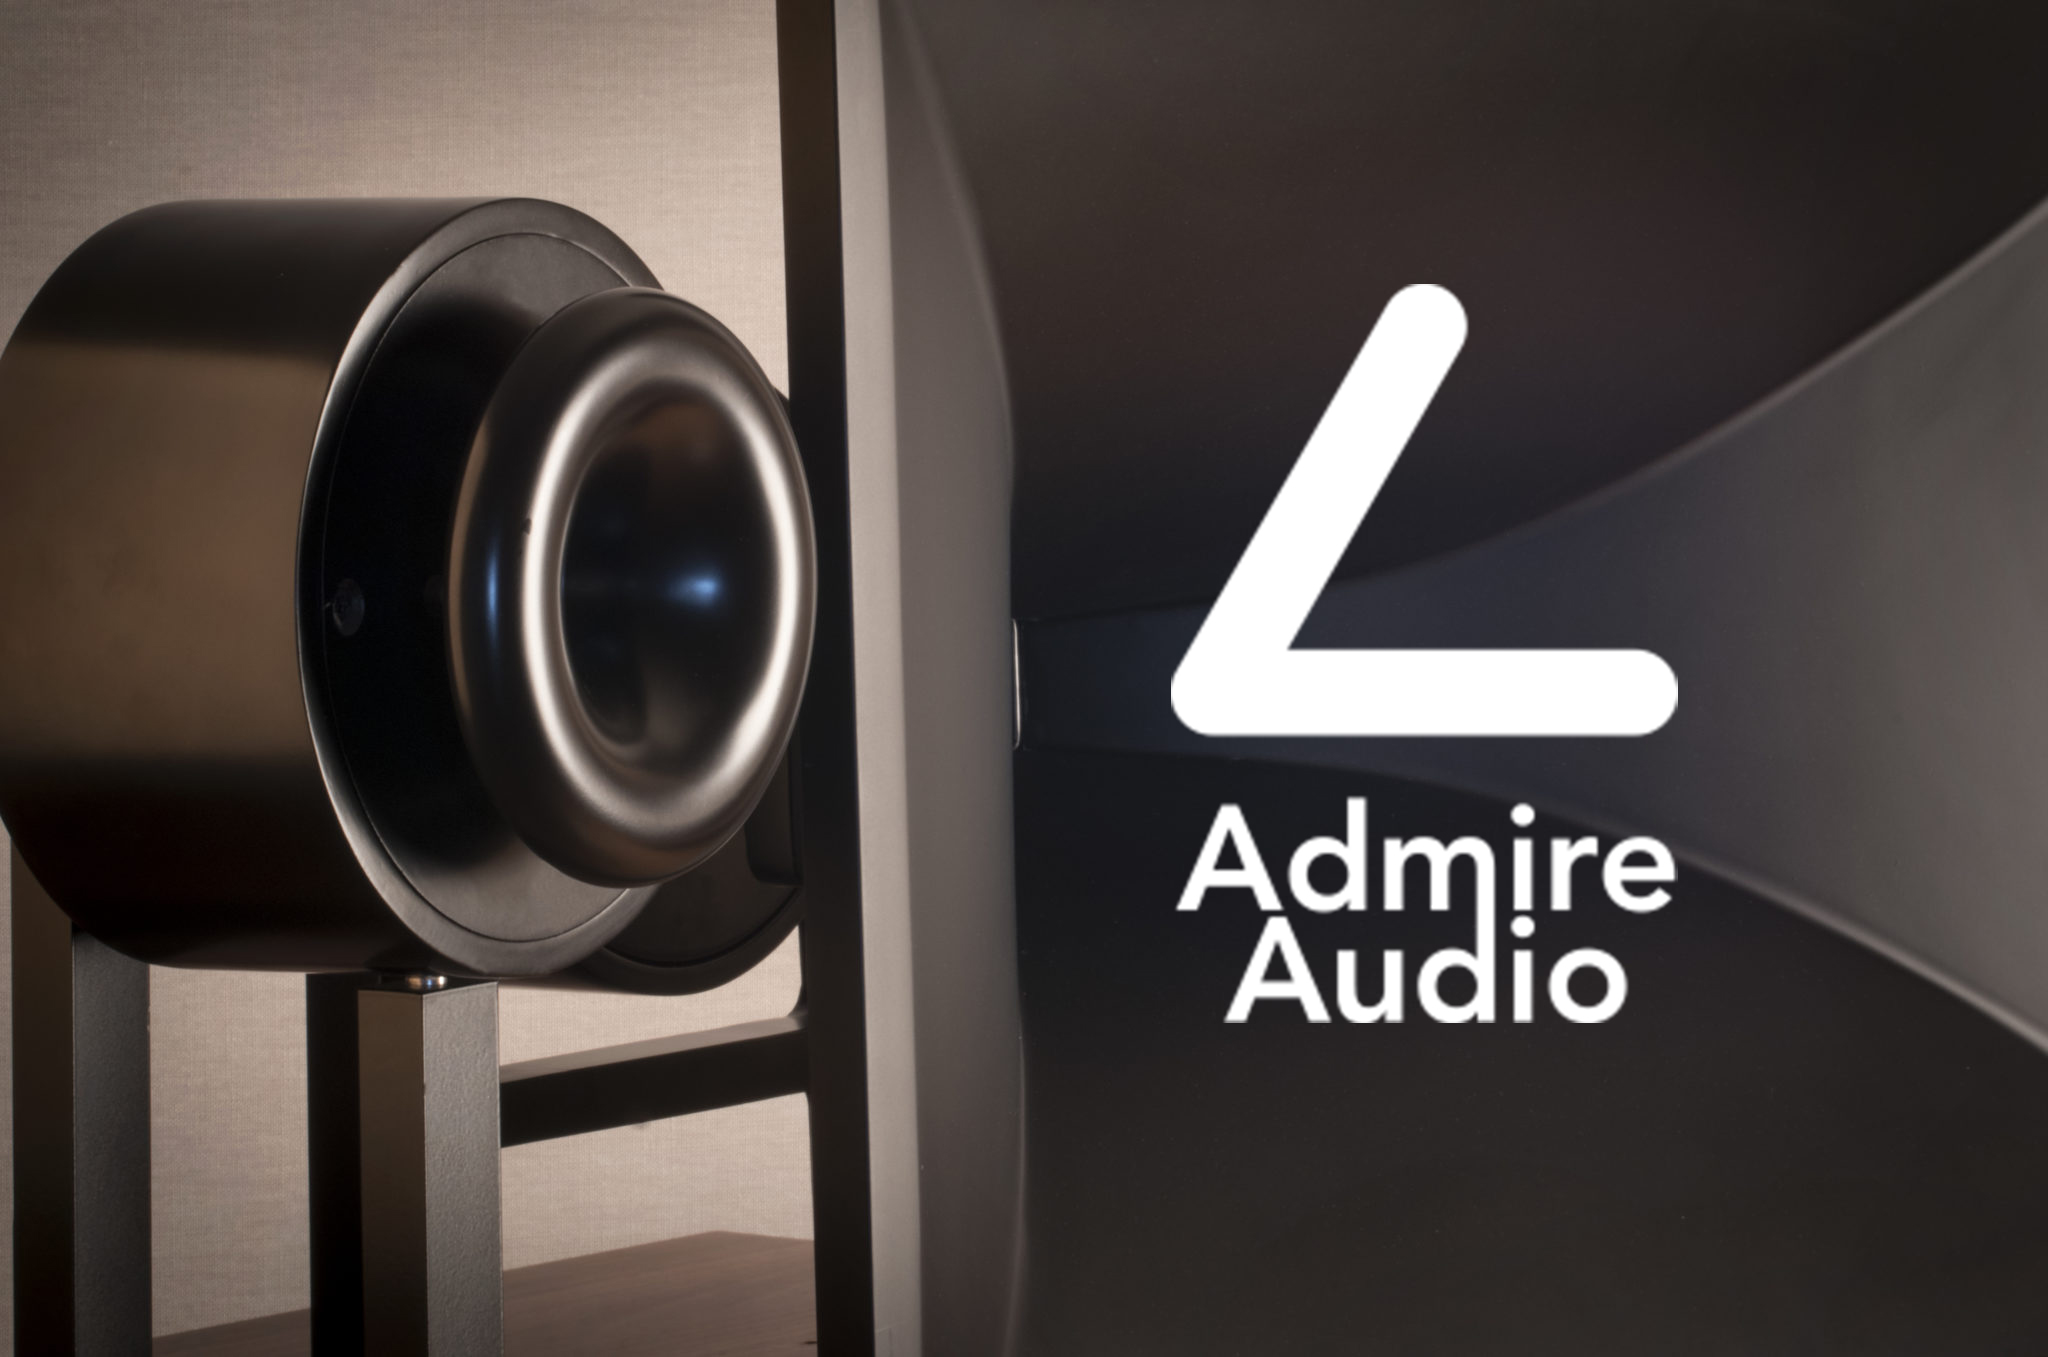 Admire Audio